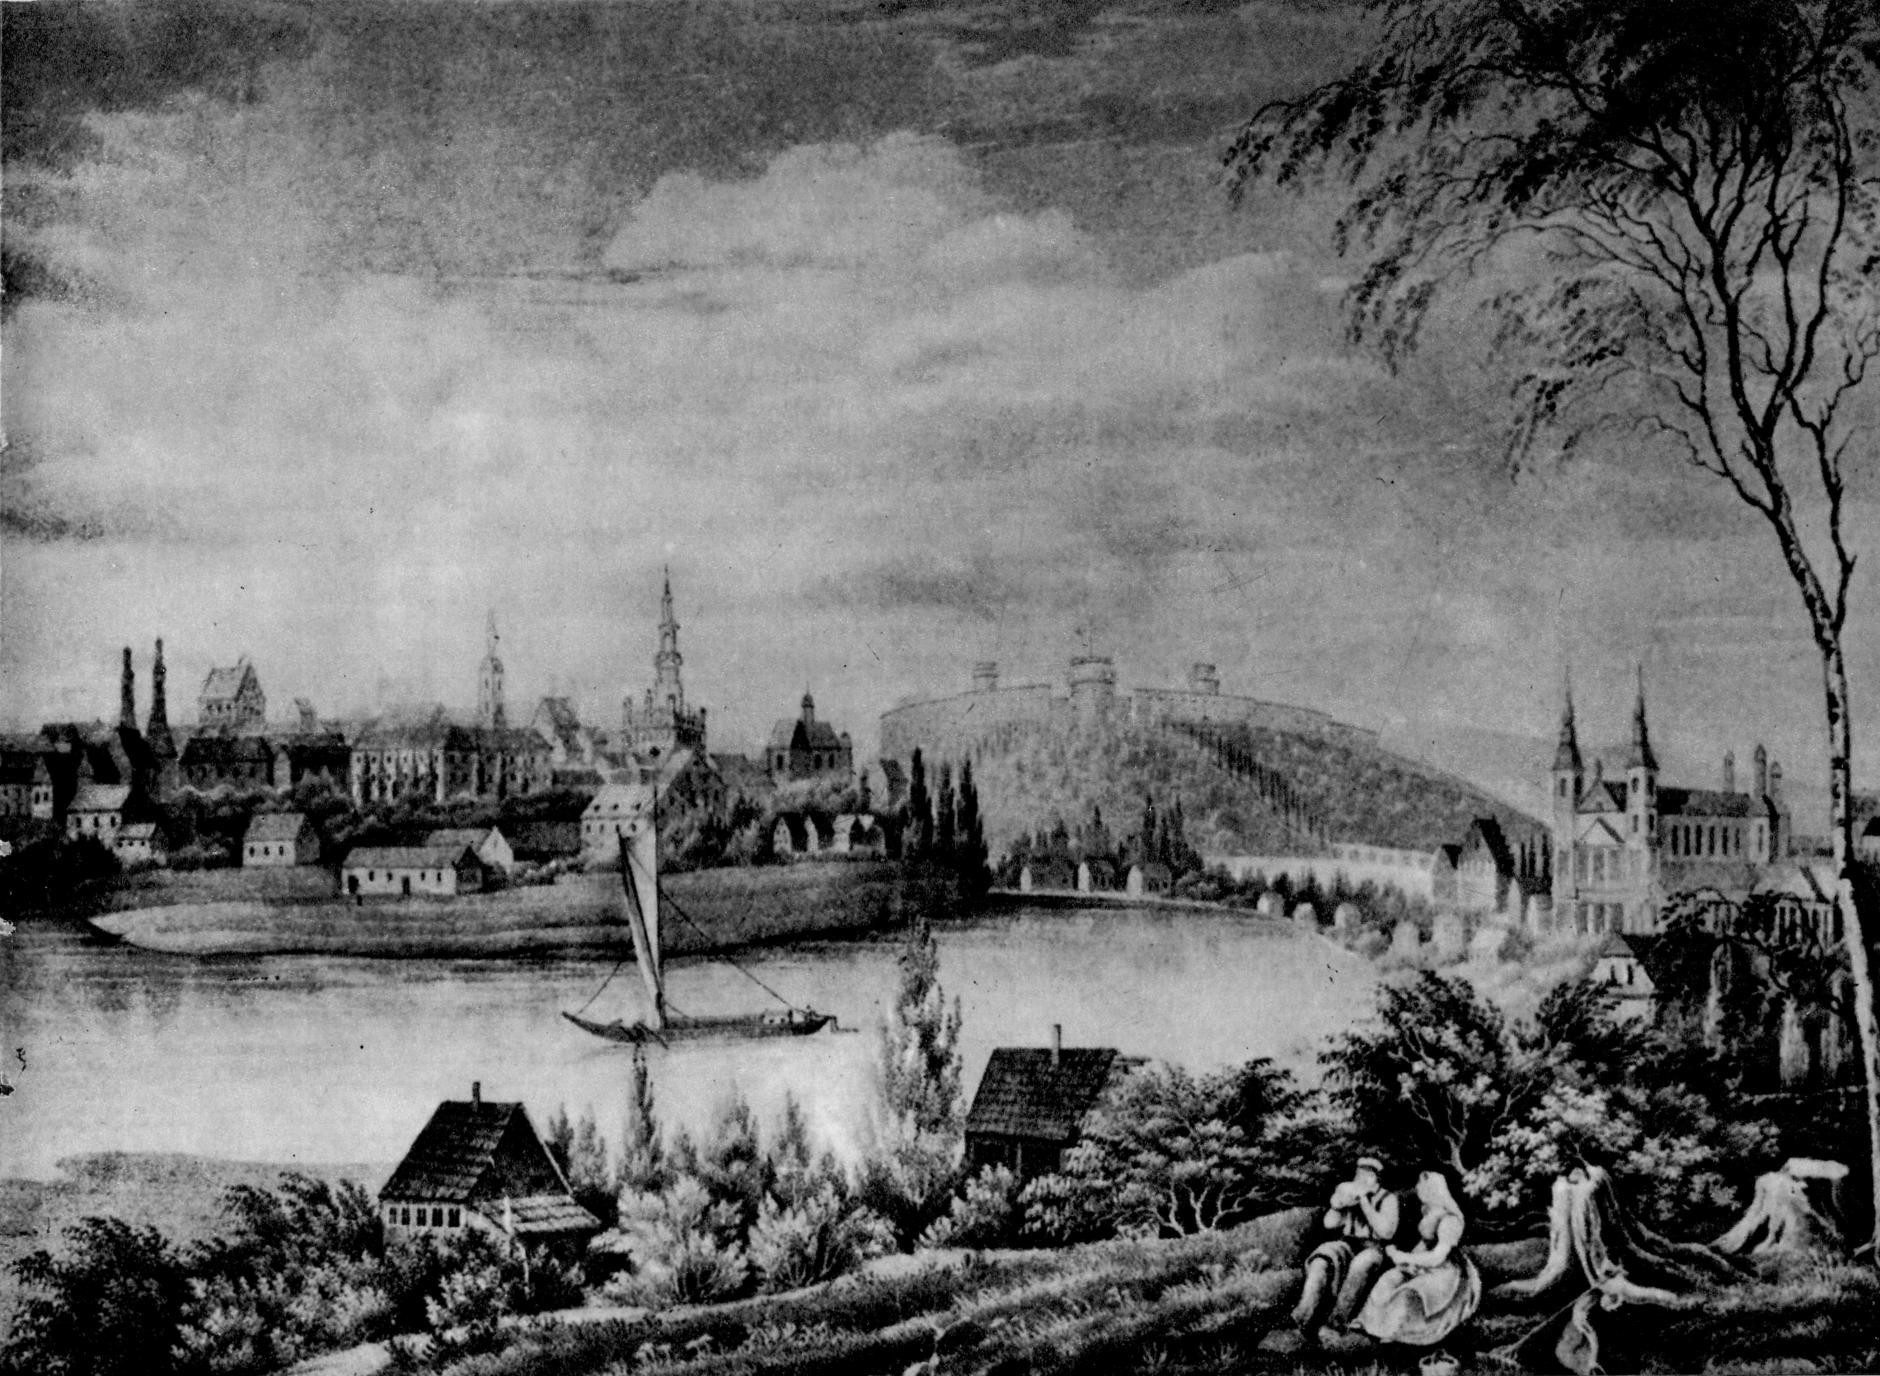 (1838) Widok ogólny z prawego brzegu Warty w roku 1838. Nad miastem góruje kompleks Cytadeli.